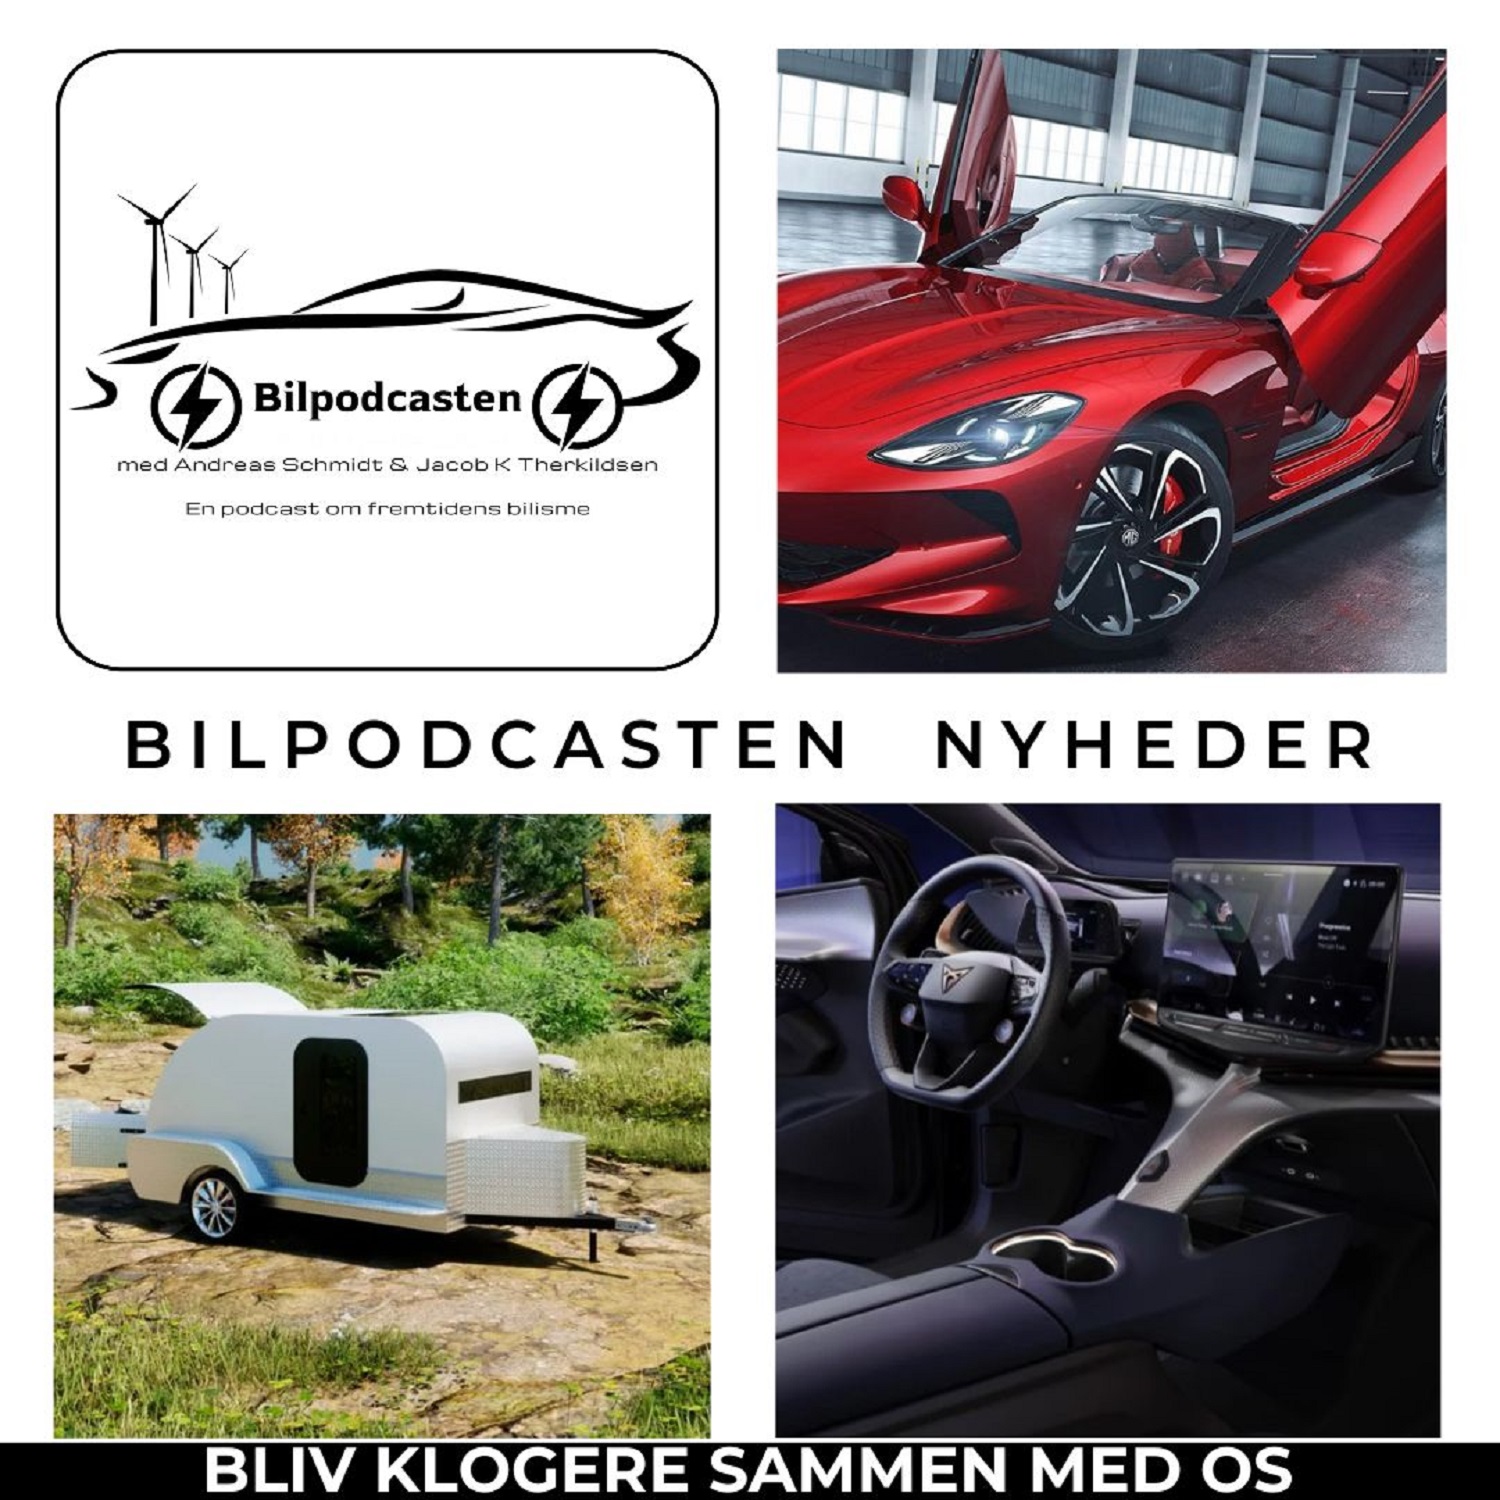 Elbilsbatteri baseret på salt, Fisker Ocean, Campingvogn med fordel for elbiler, Xpeng G6, MG Cybester, Cupra Tavascan